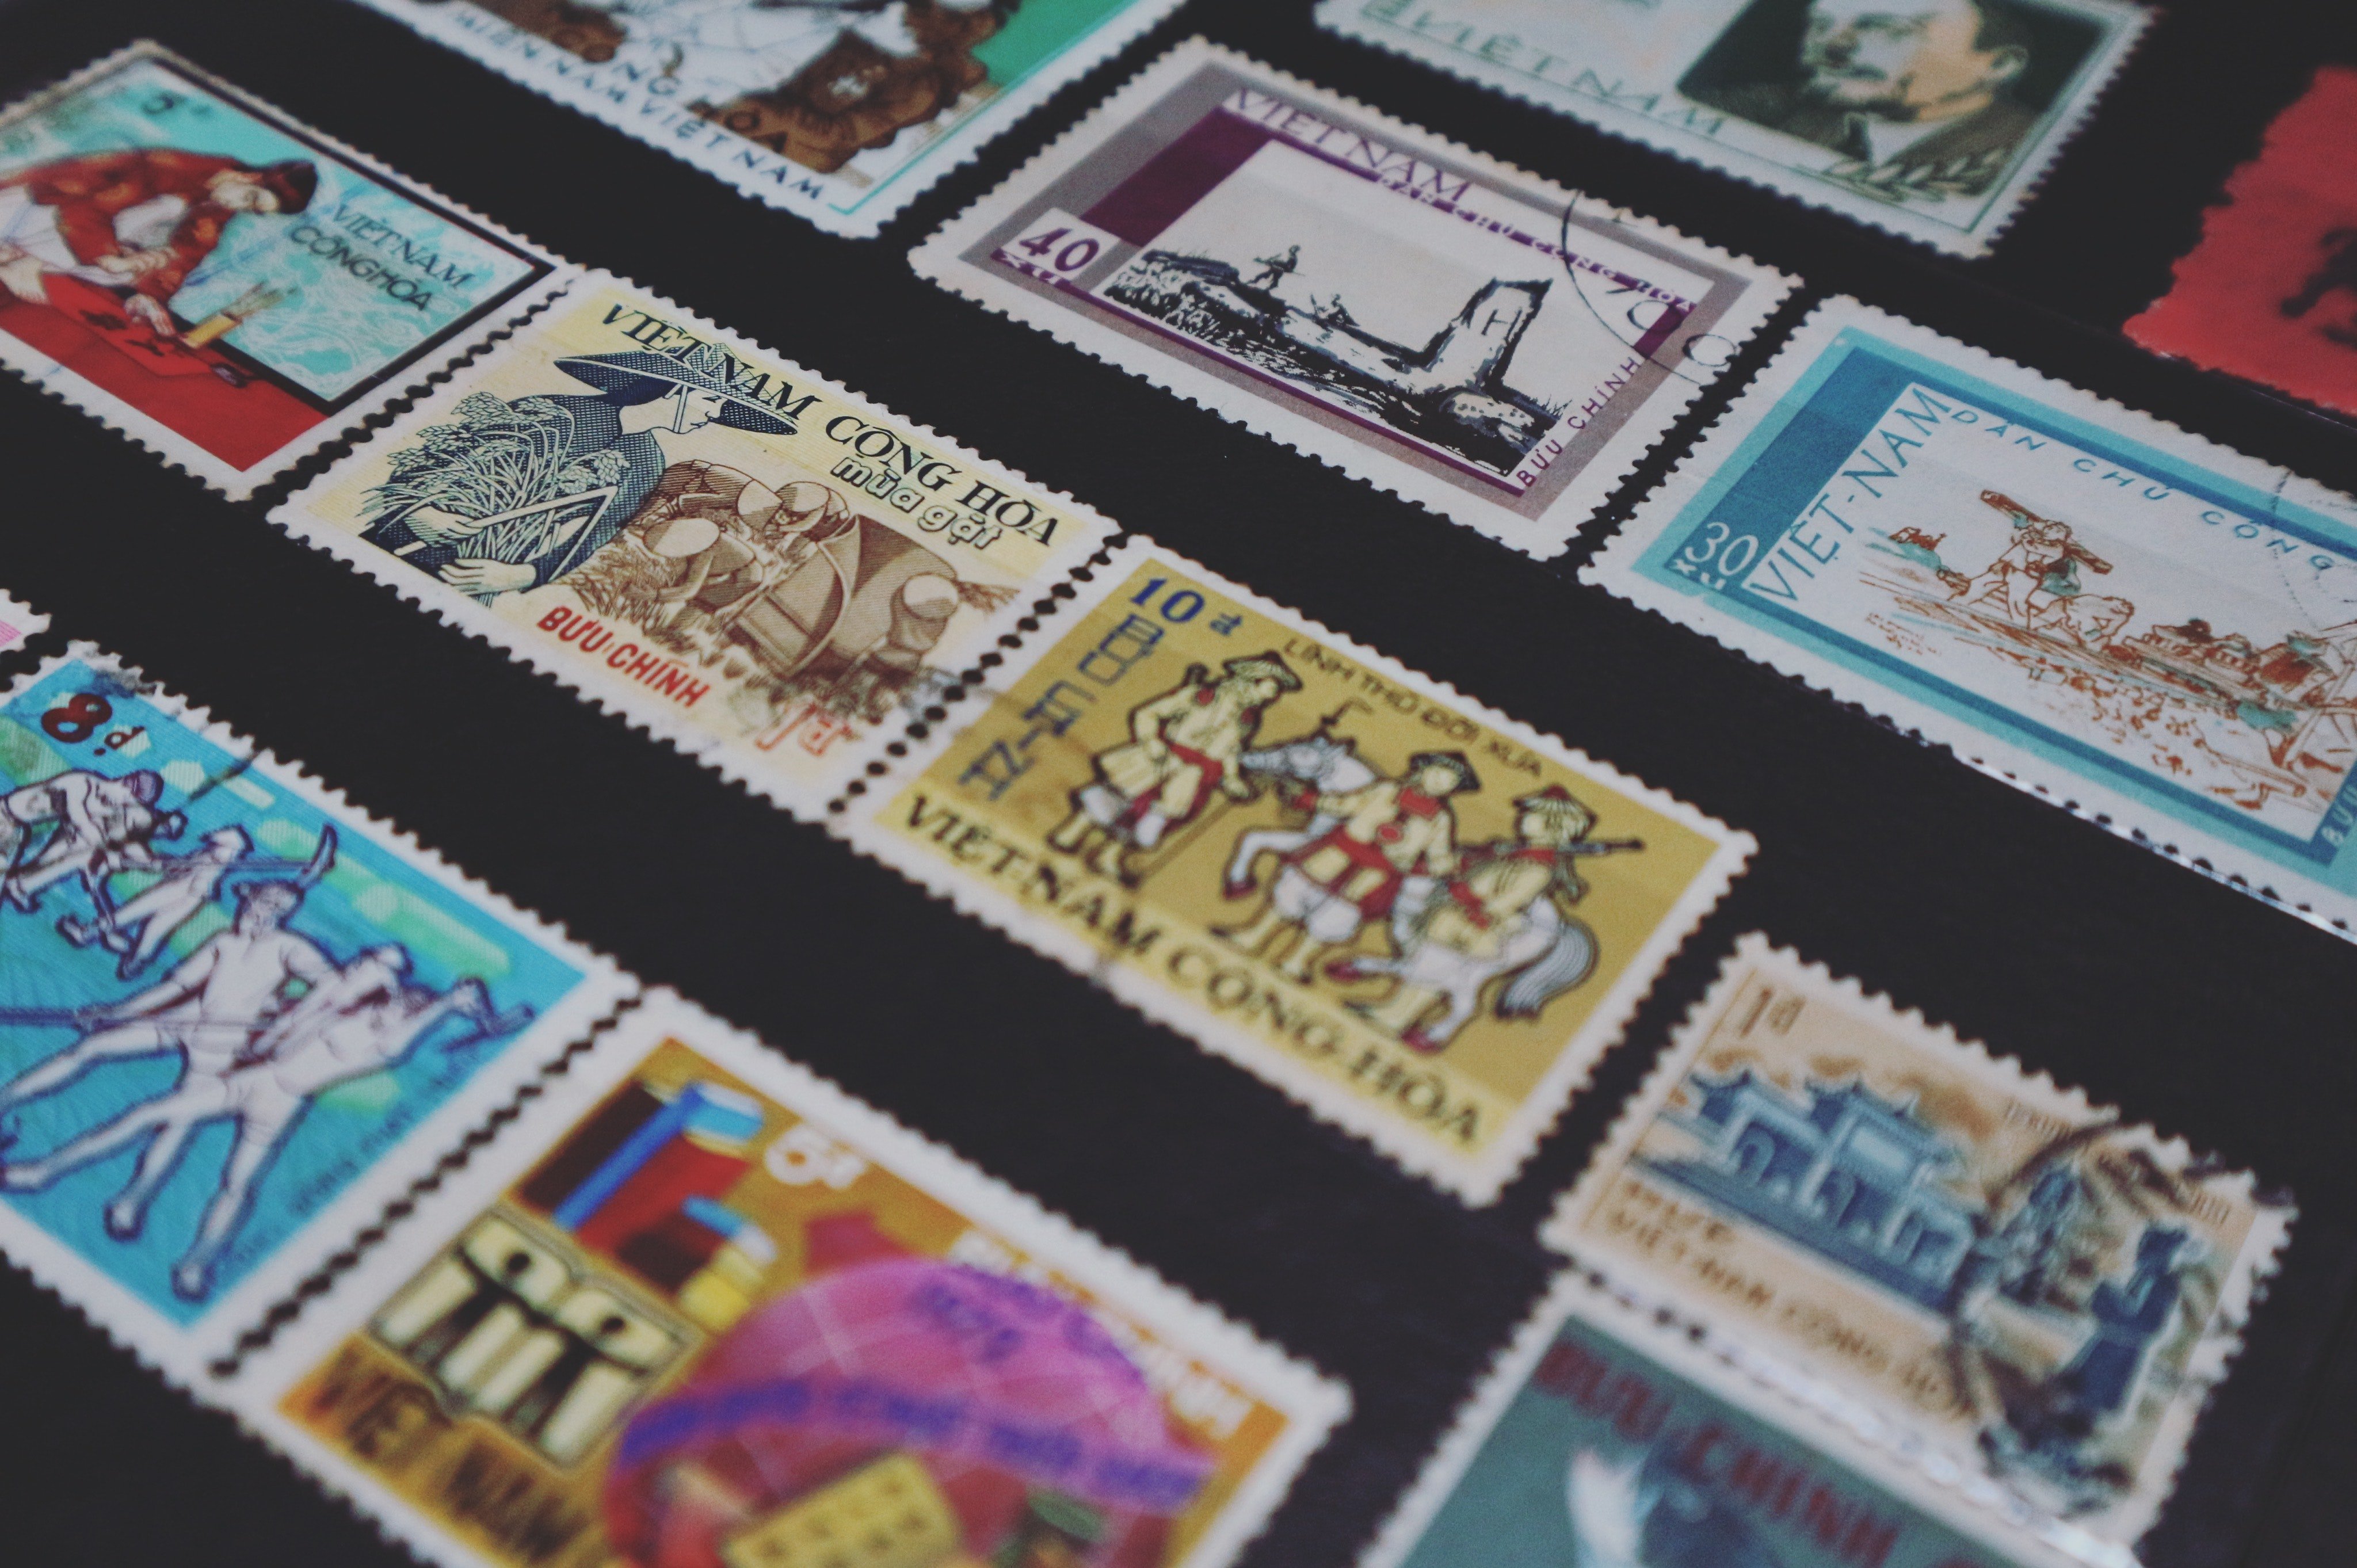 An einem von Jacks Geburtstagen schenkte Sally ihm ein riesiges, datiertes Album voller Briefmarken. | Quelle: Pexels